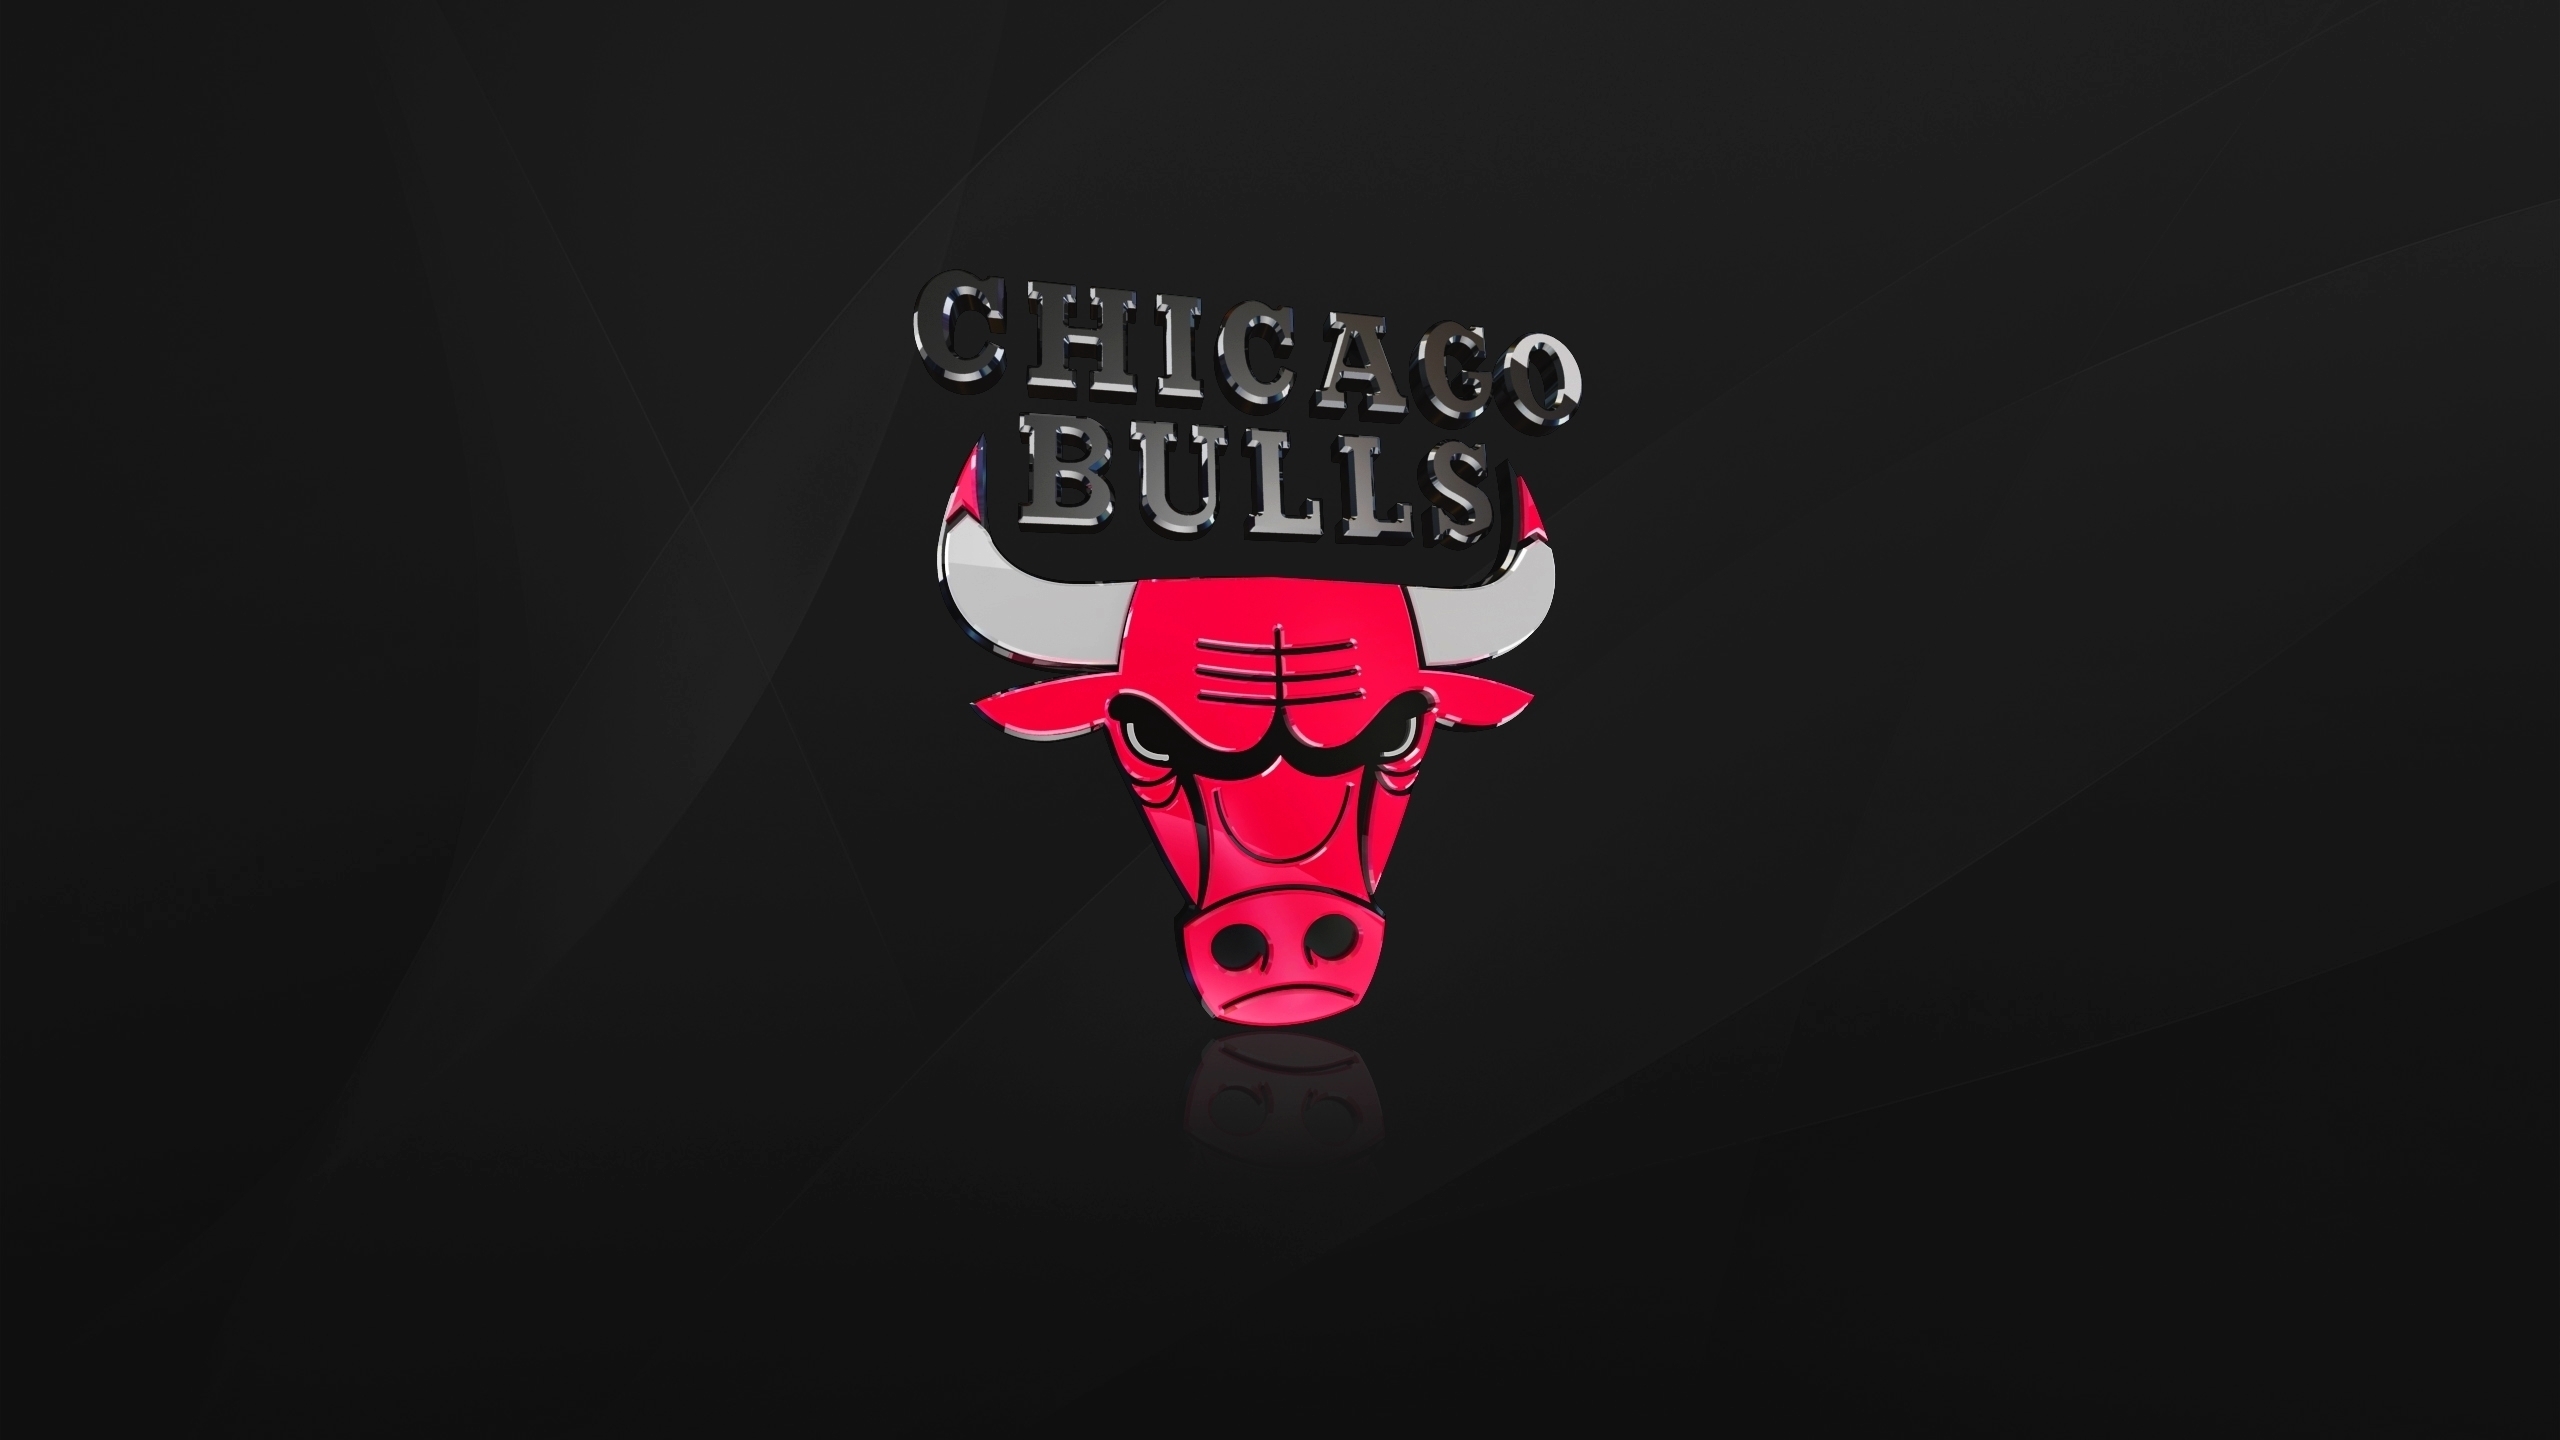 The Chicago Bulls for 2560x1440 HDTV resolution